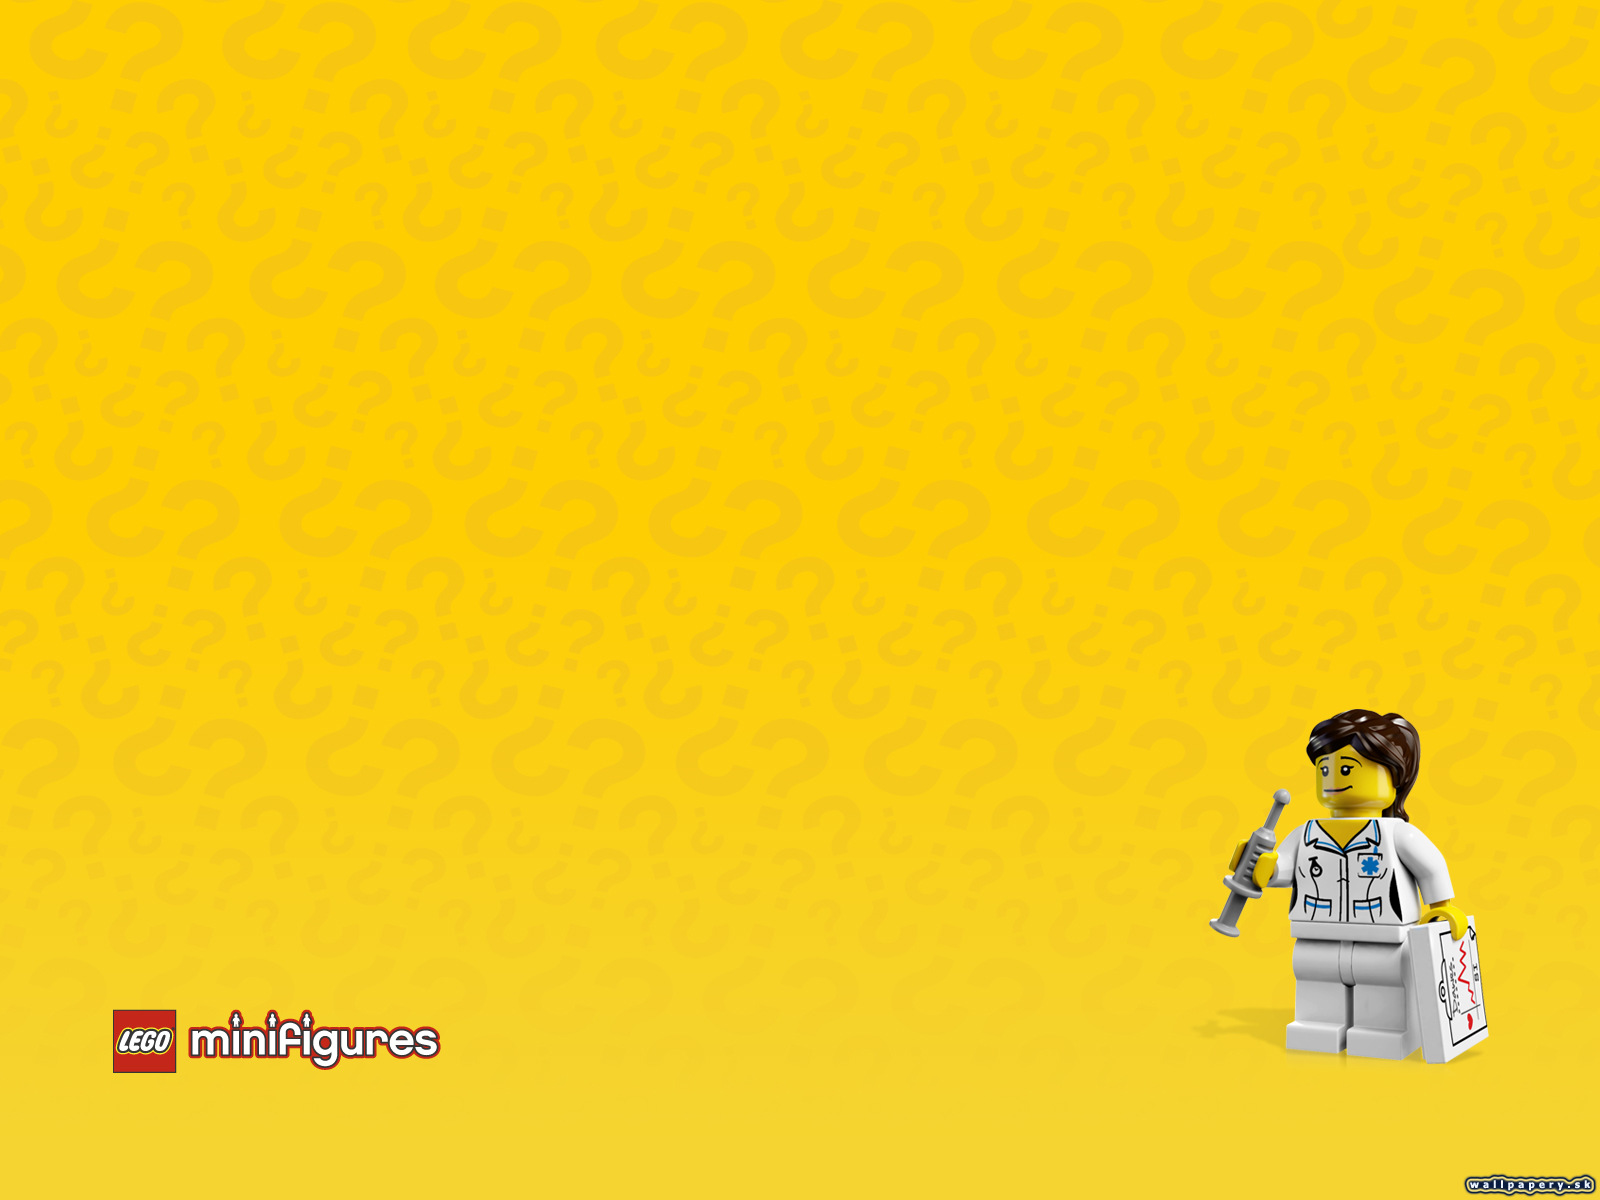 LEGO Minifigures Online - wallpaper 37